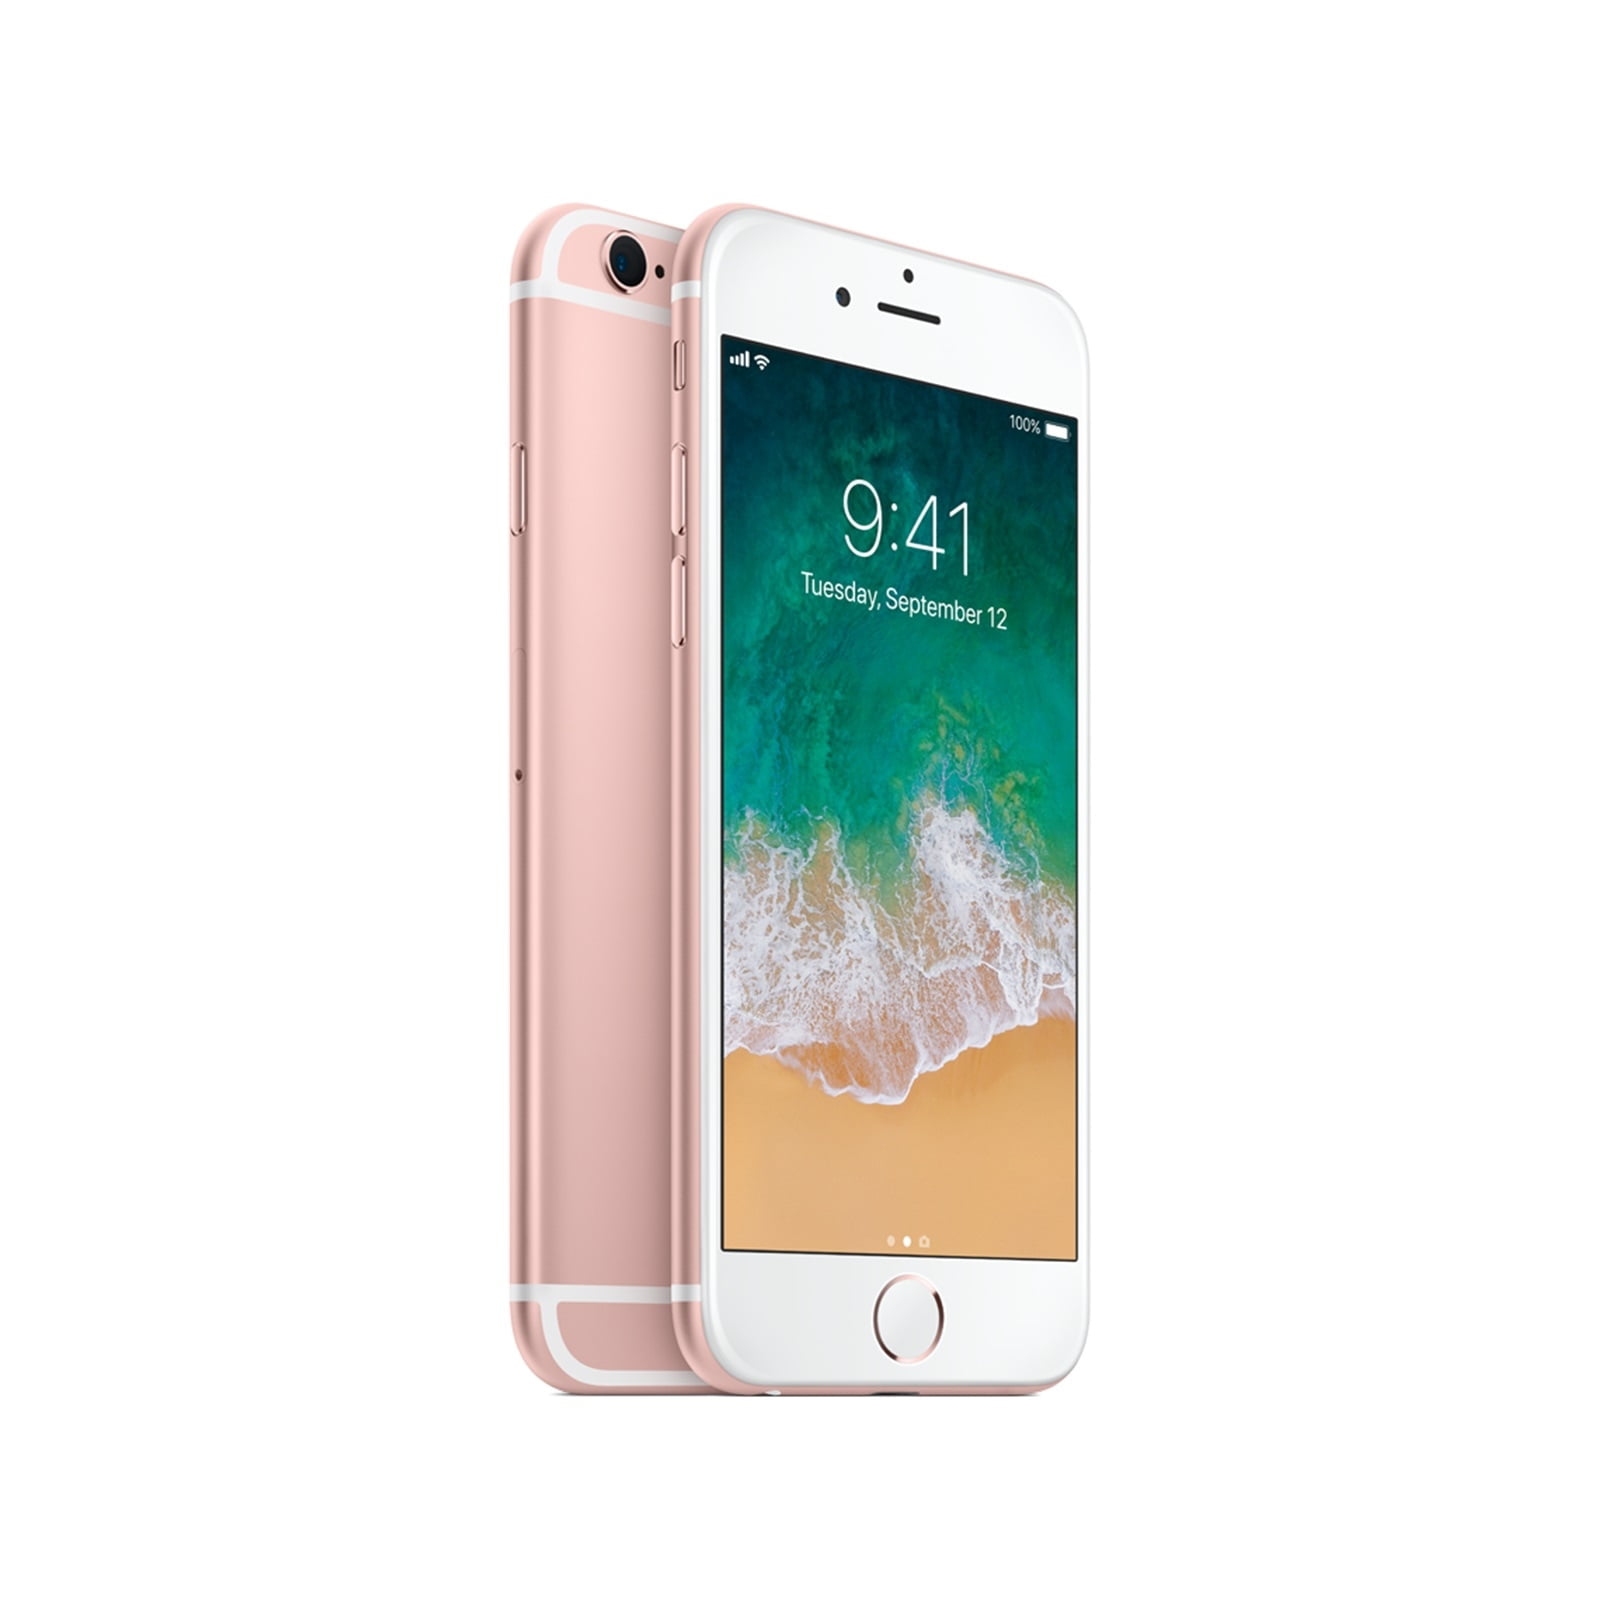 スマートフォン/携帯電話Apple iPhone SE 16GB ローズゴールド ドコモ版SIMフリー